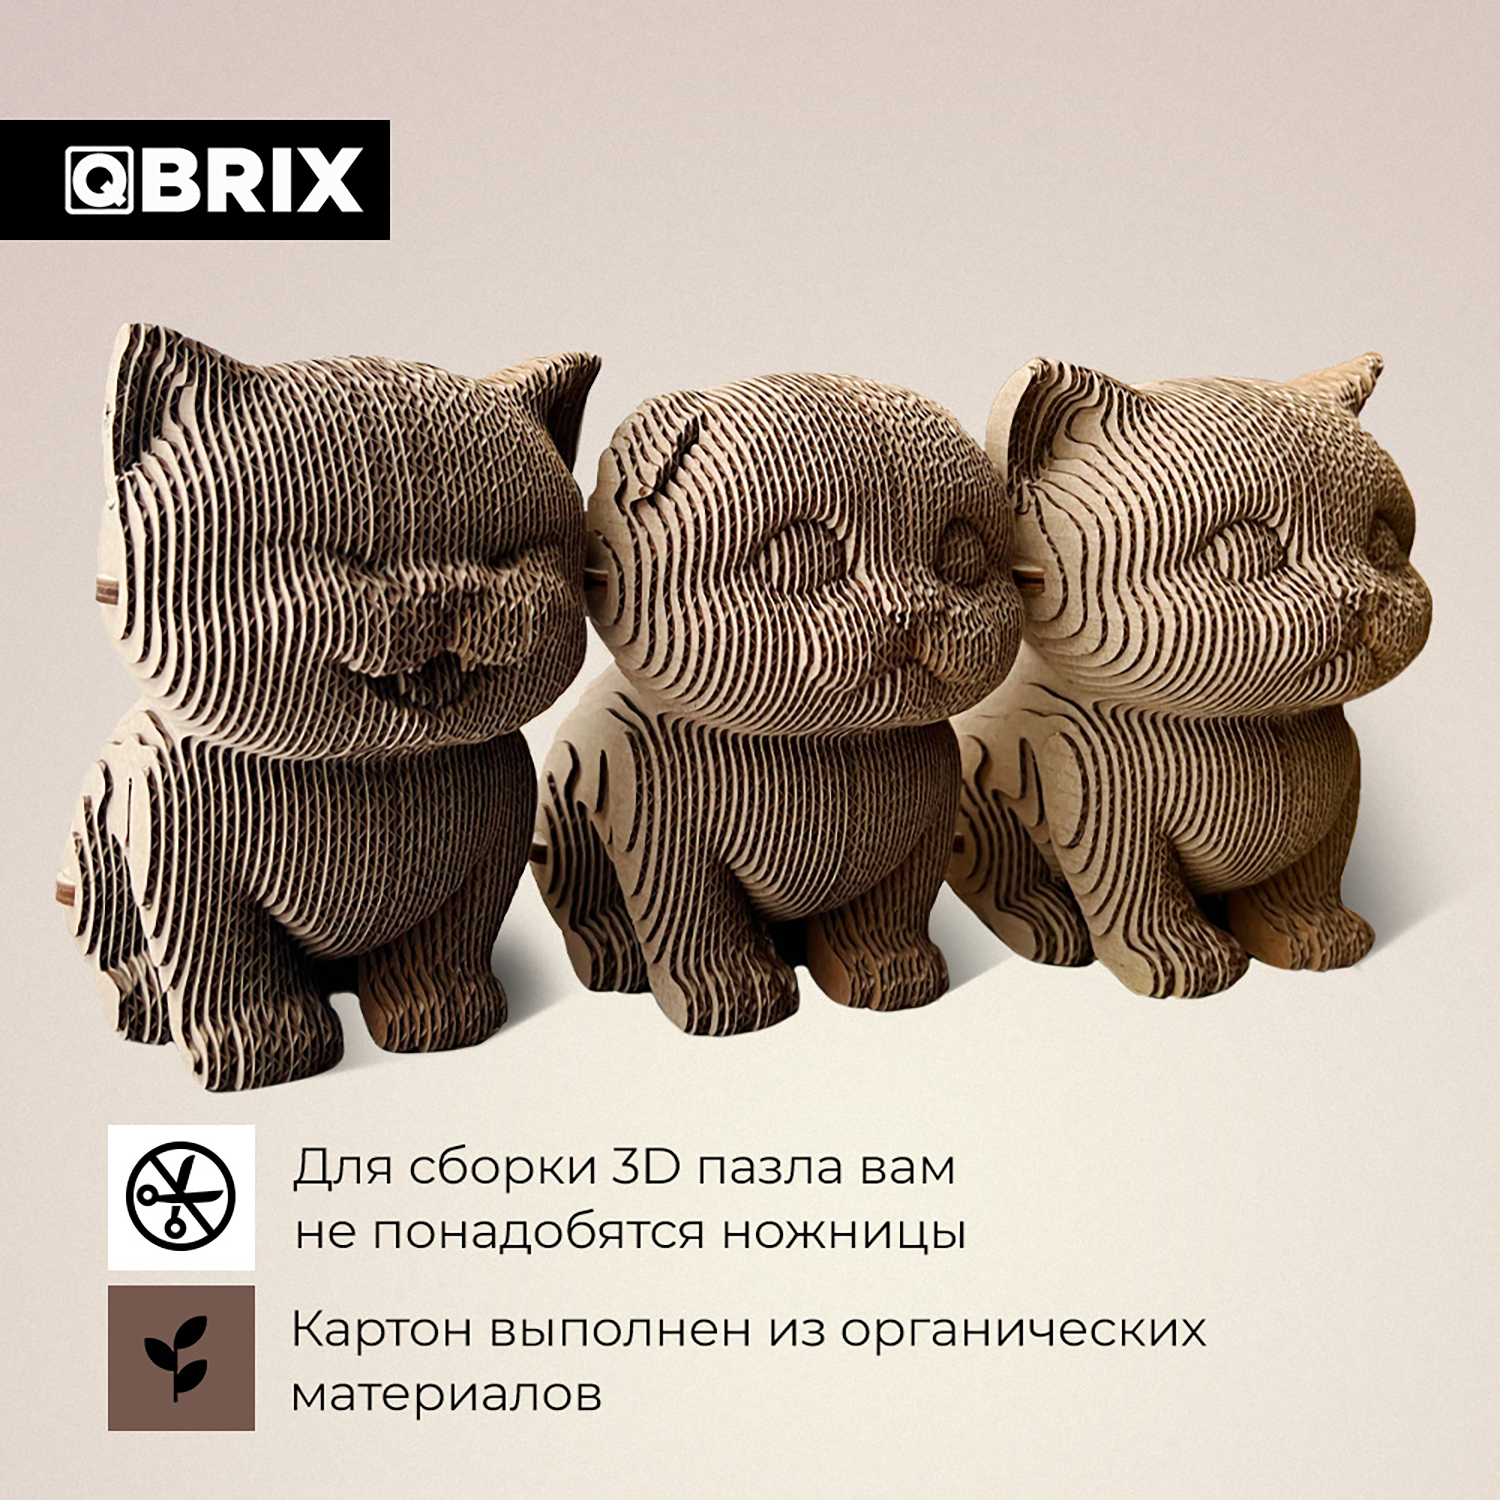 Конструктор QBRIX 3D картонный Три котика 20021 20021 - фото 5